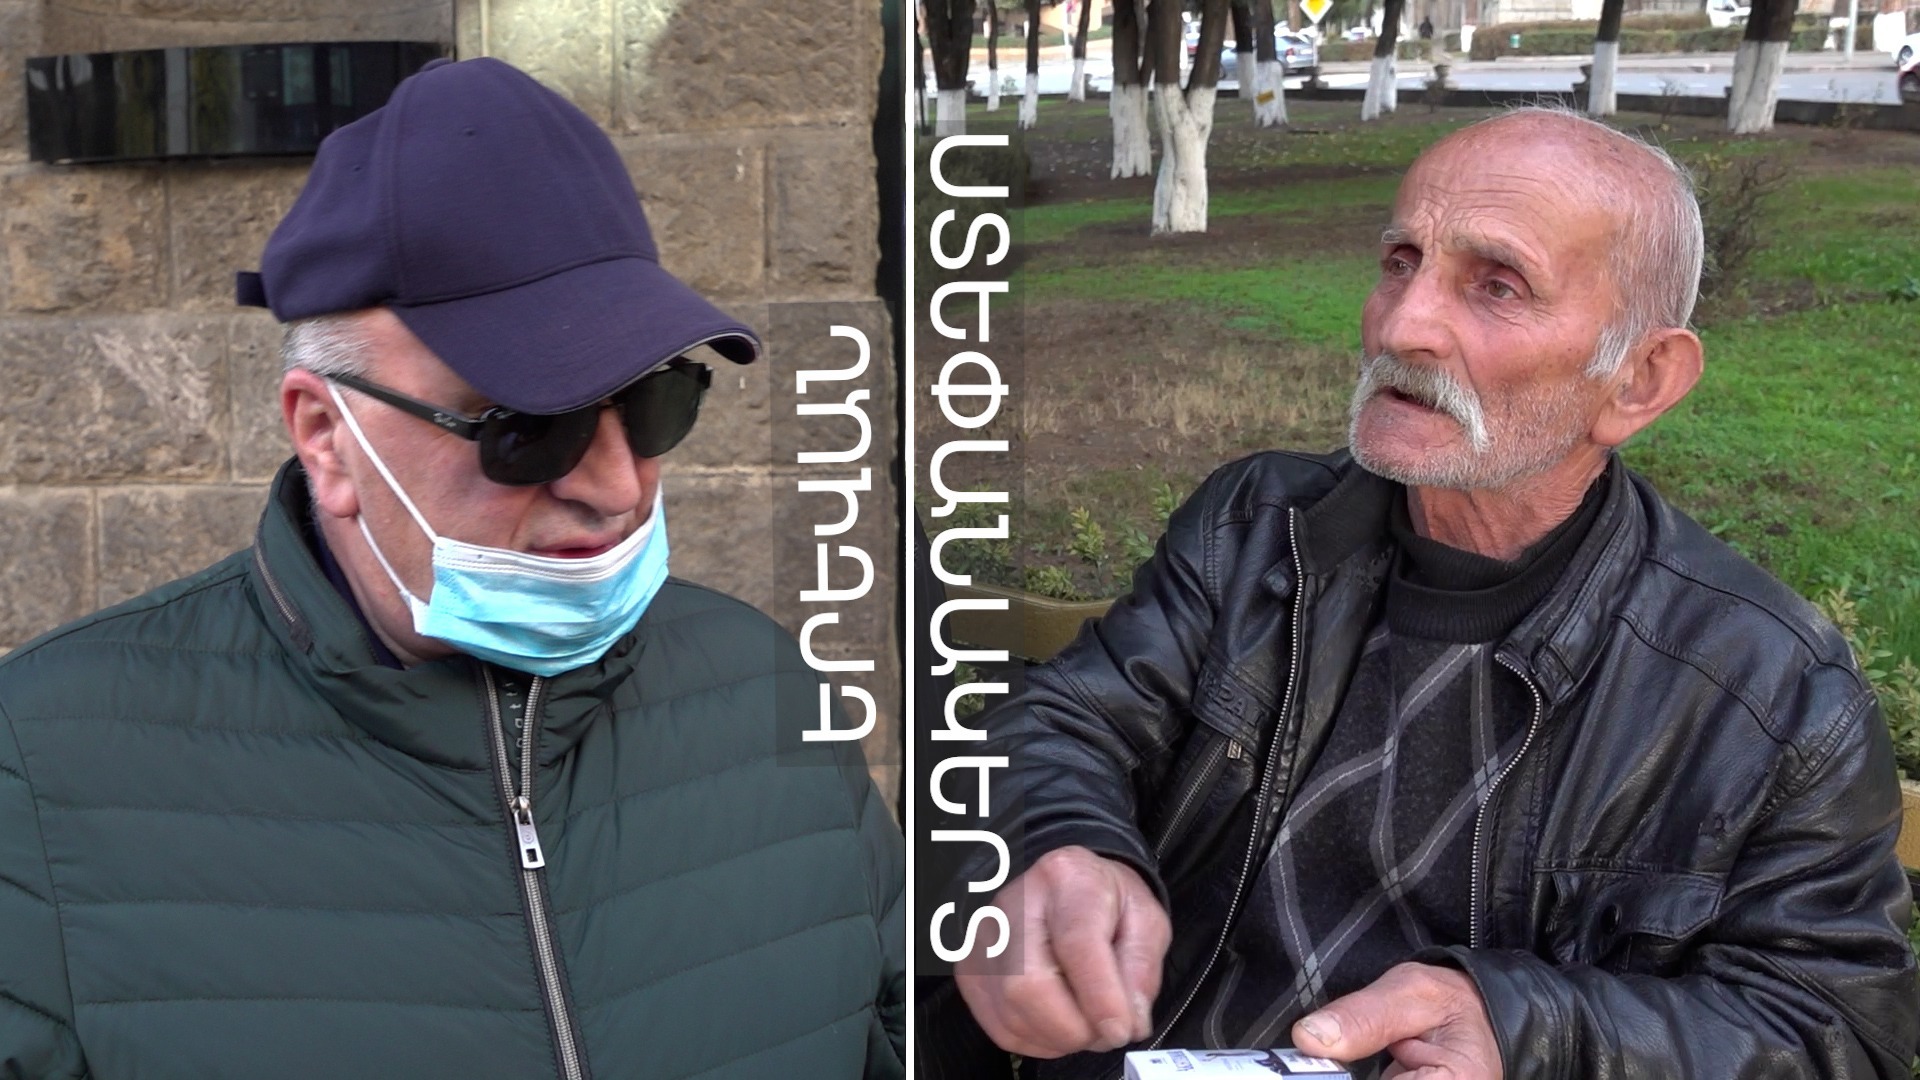 Պատերազմից մեկ տարի անց․ ինչ են ասում մարդիկ Երևանում ու Ստեփանակերտում